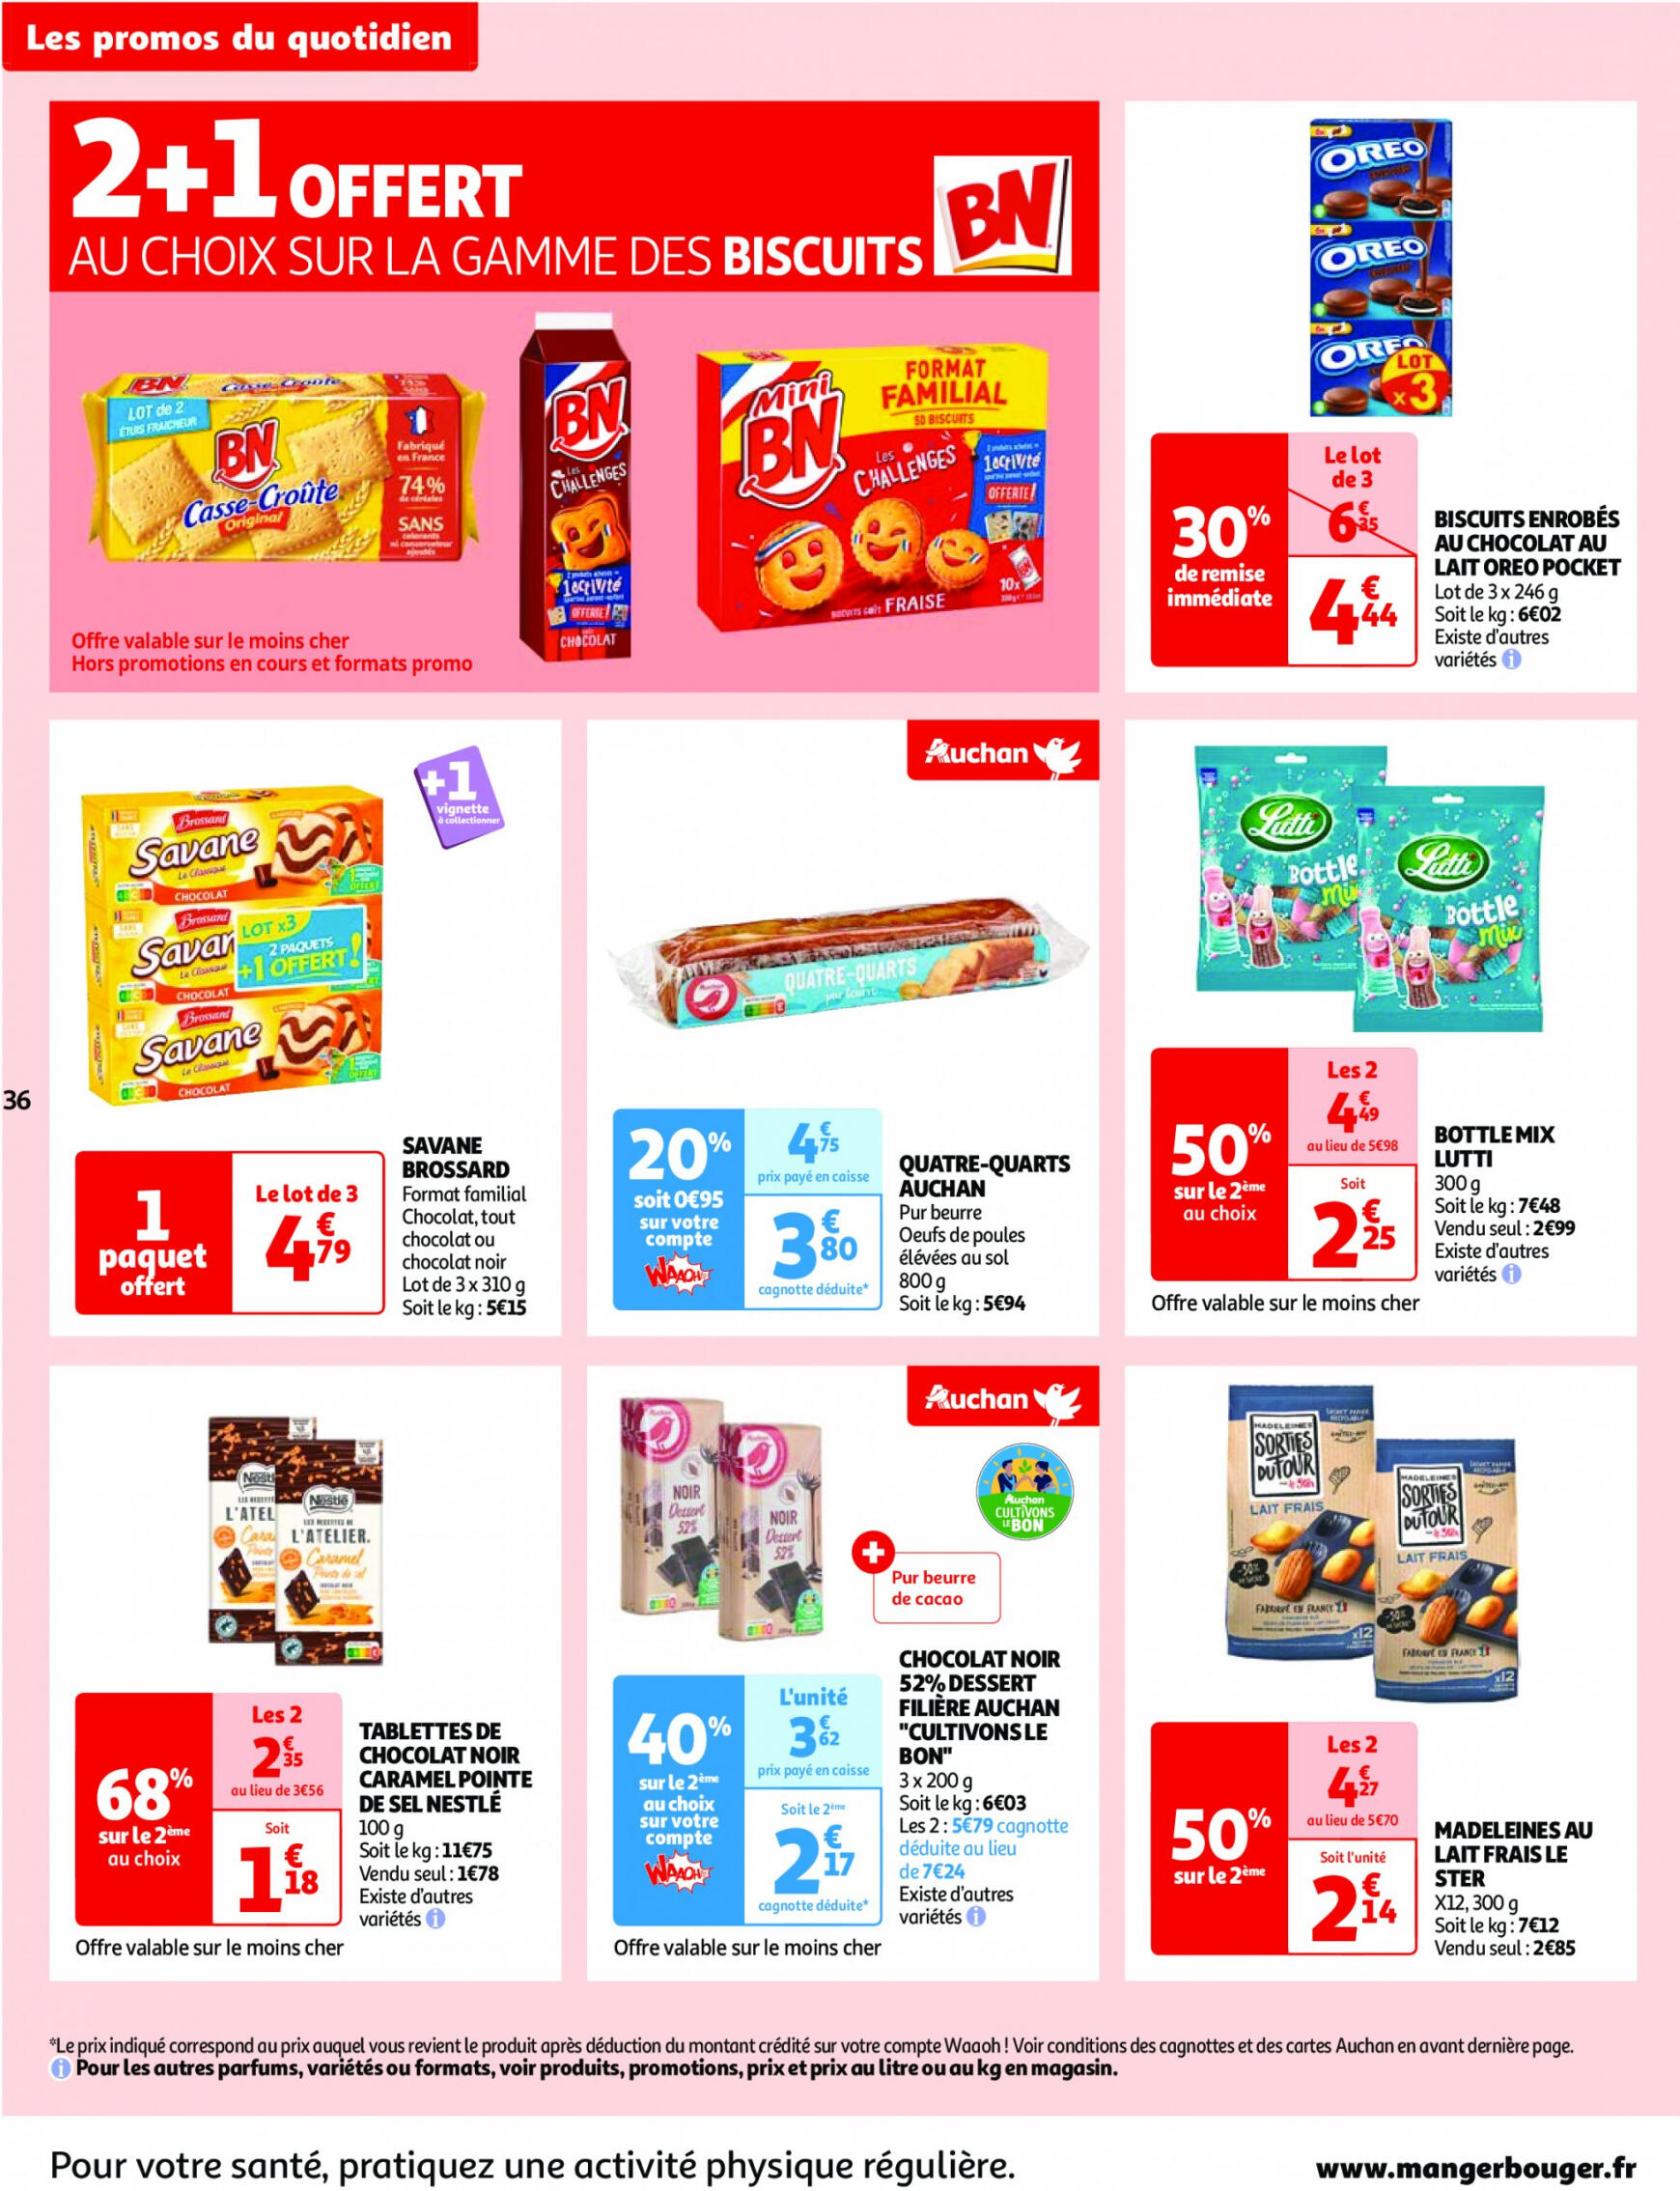 auchan - Prospectus Auchan actuel 14.05. - 21.05. - page: 36